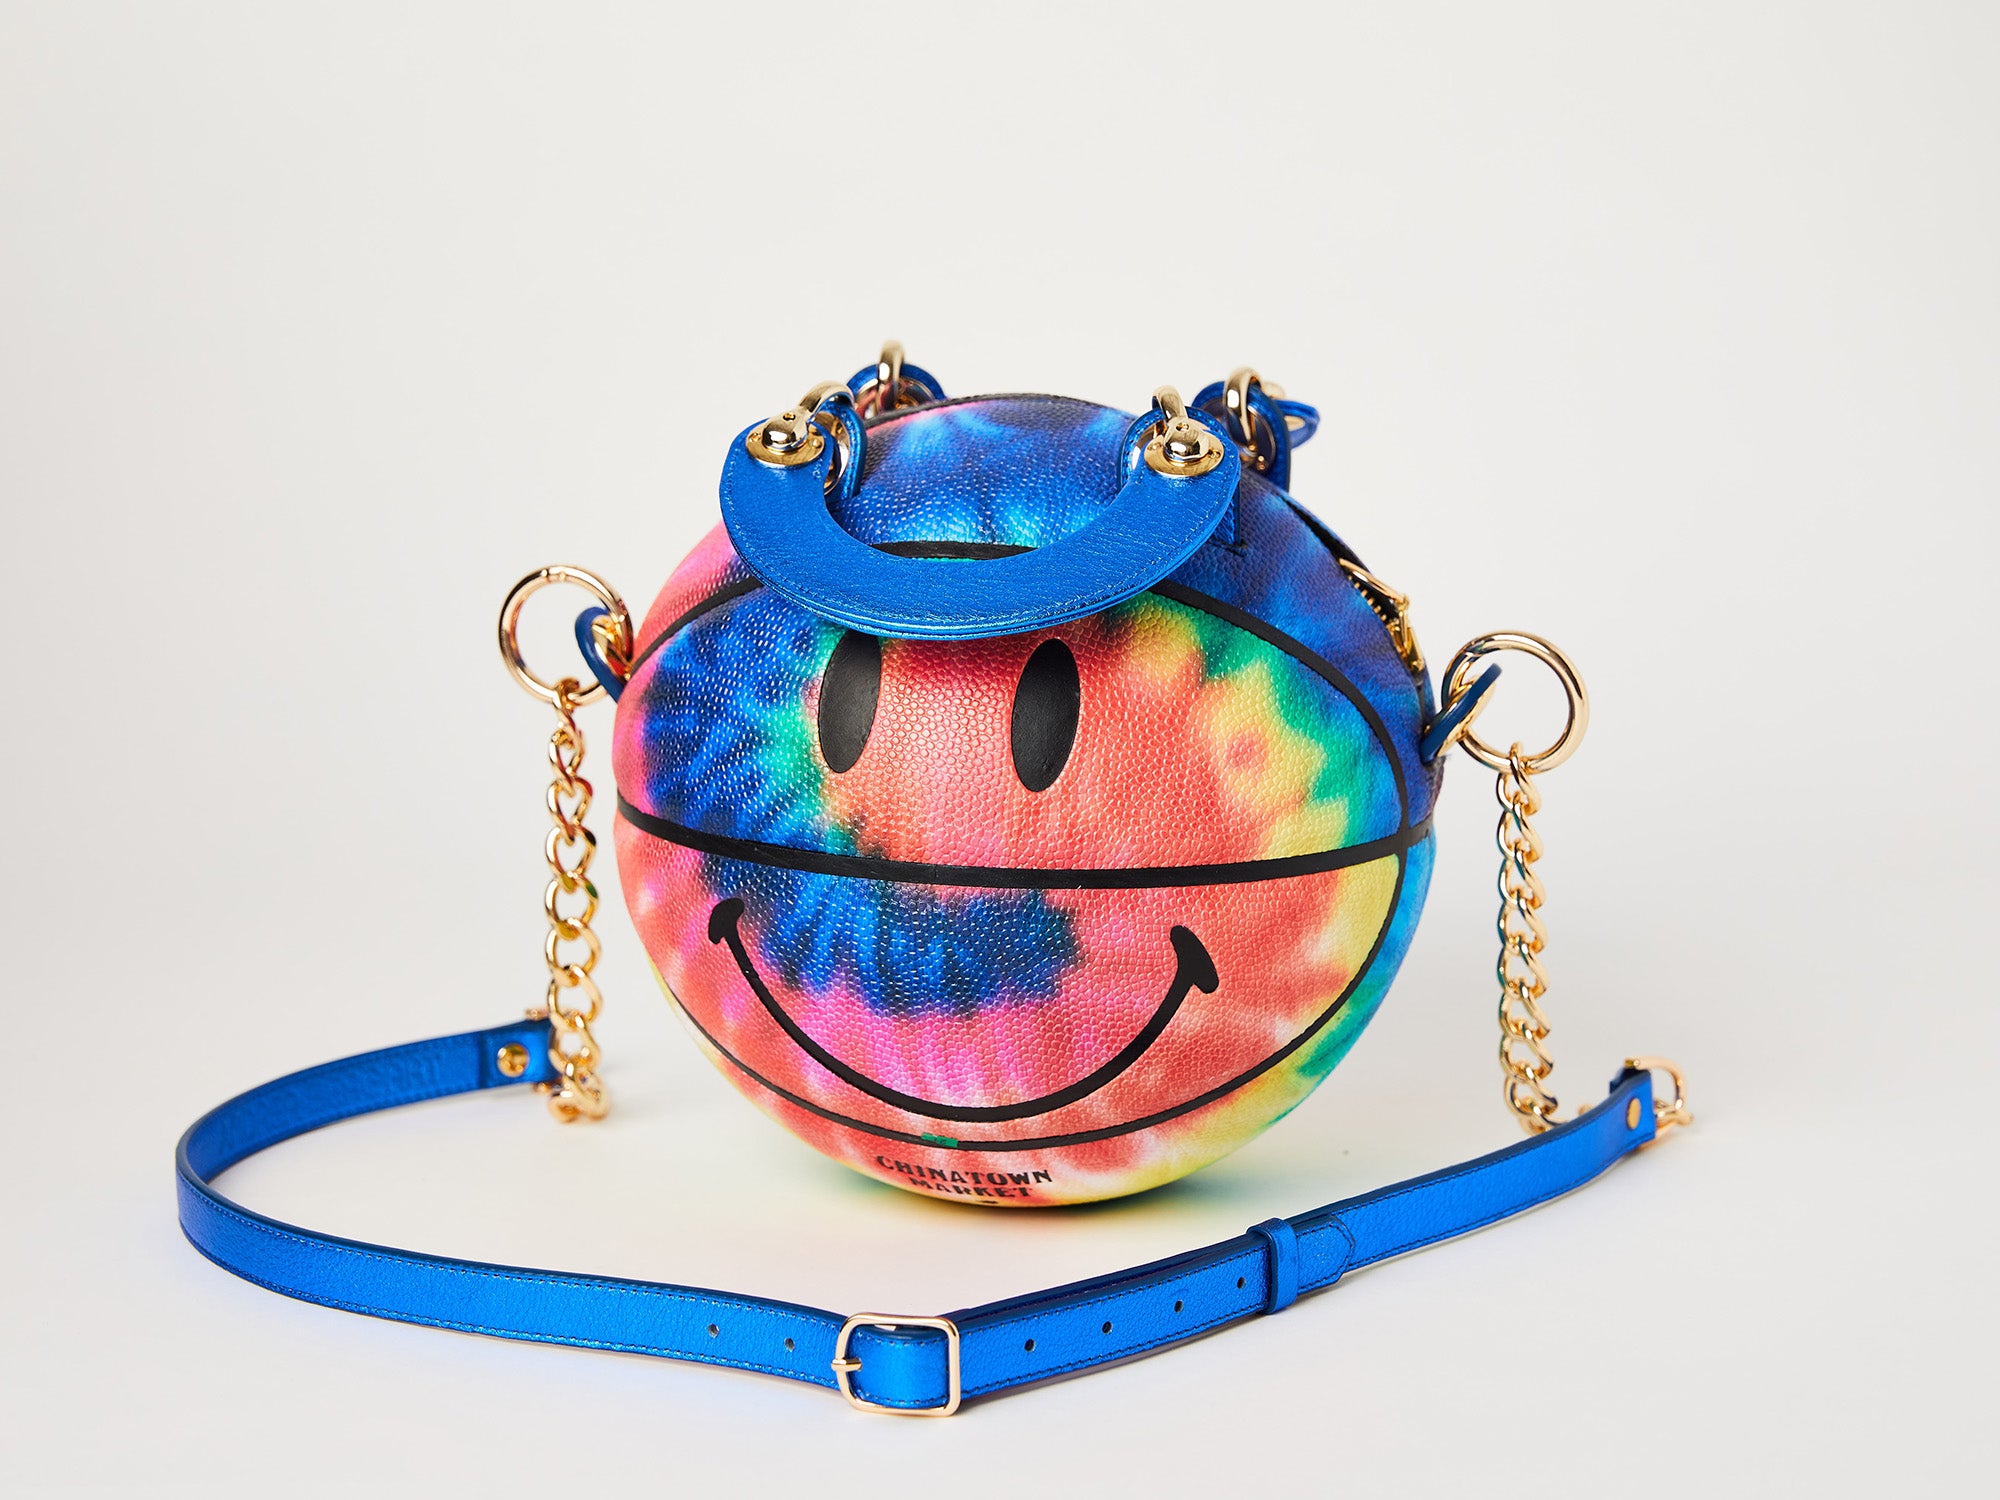 Smiley Tie-Dye Basketball Bag